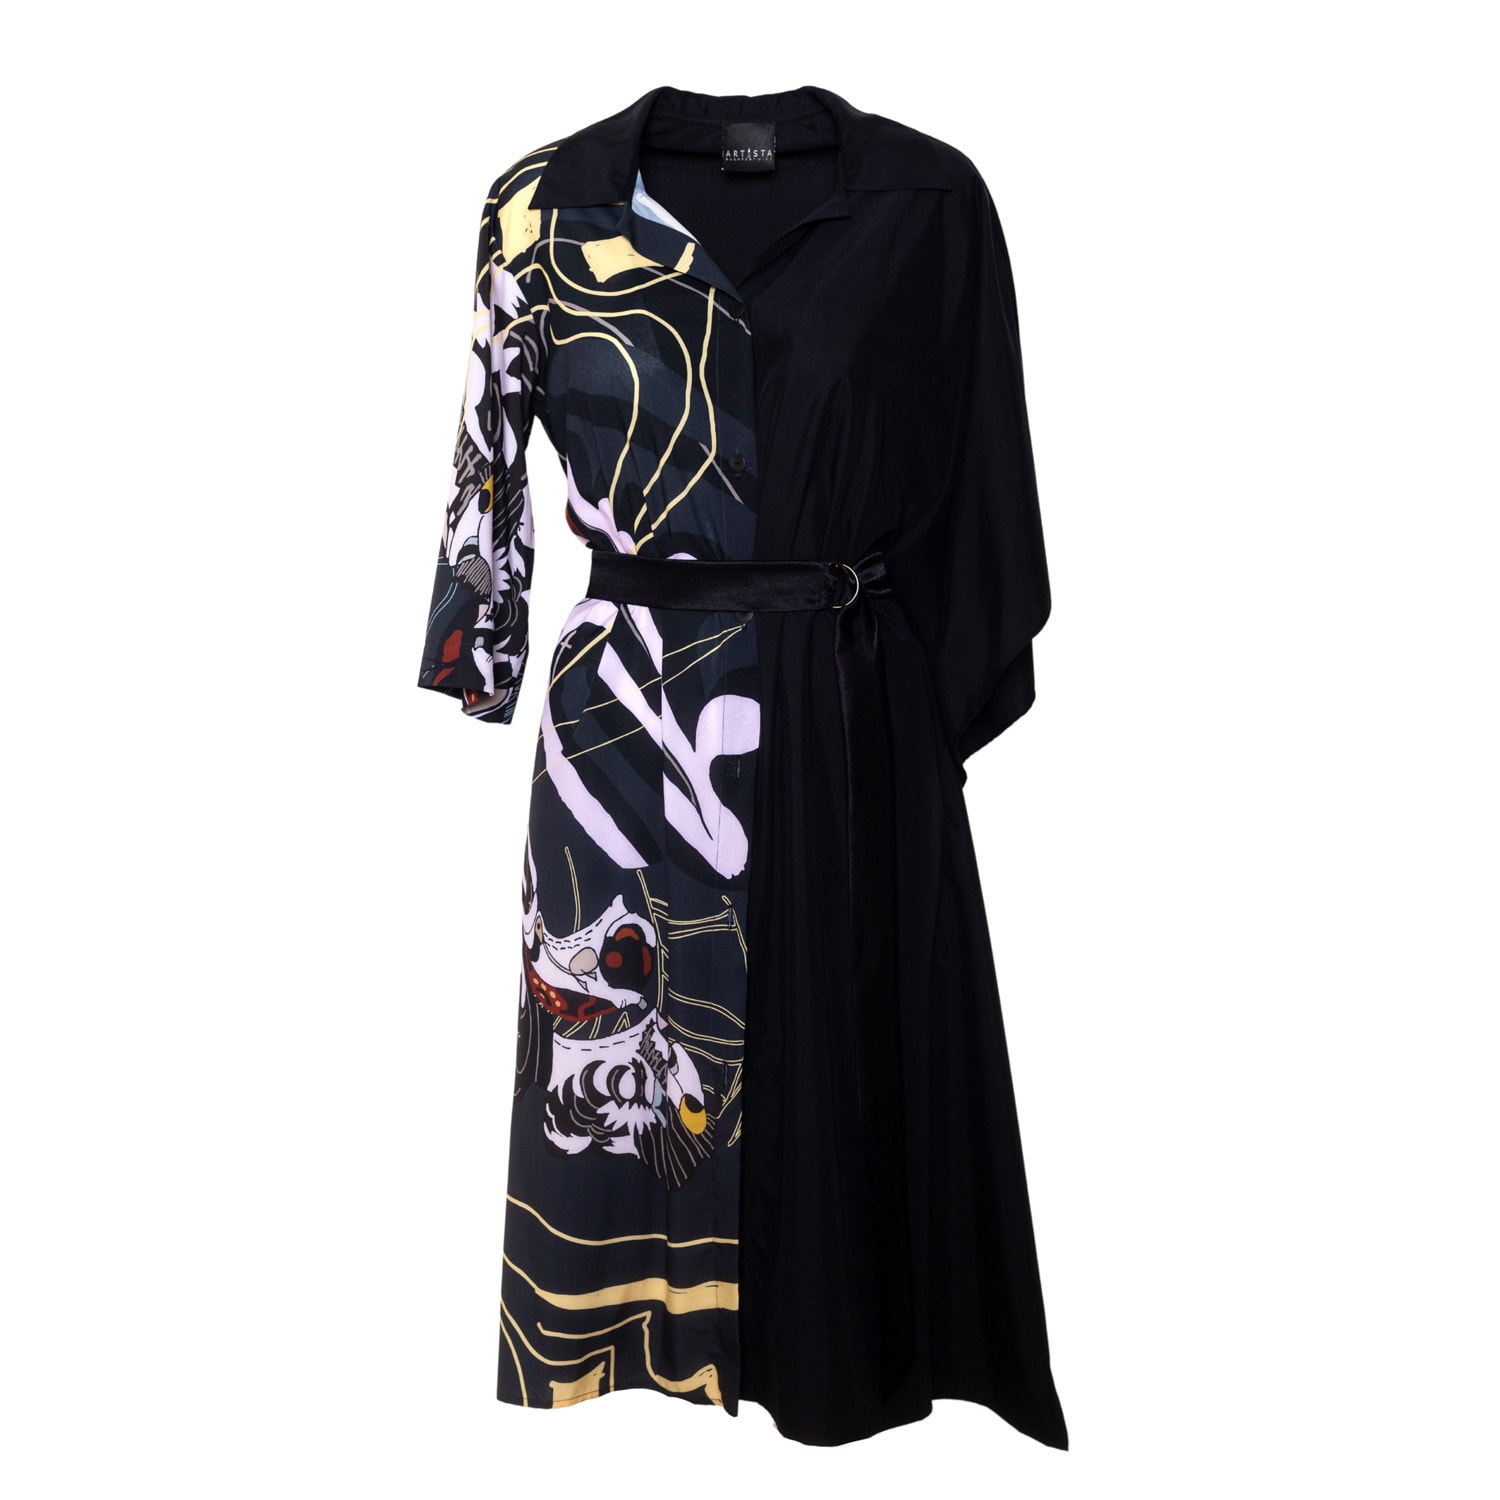 Women's Black Bath Yin Asymmetric Printed Dress S/M Artista